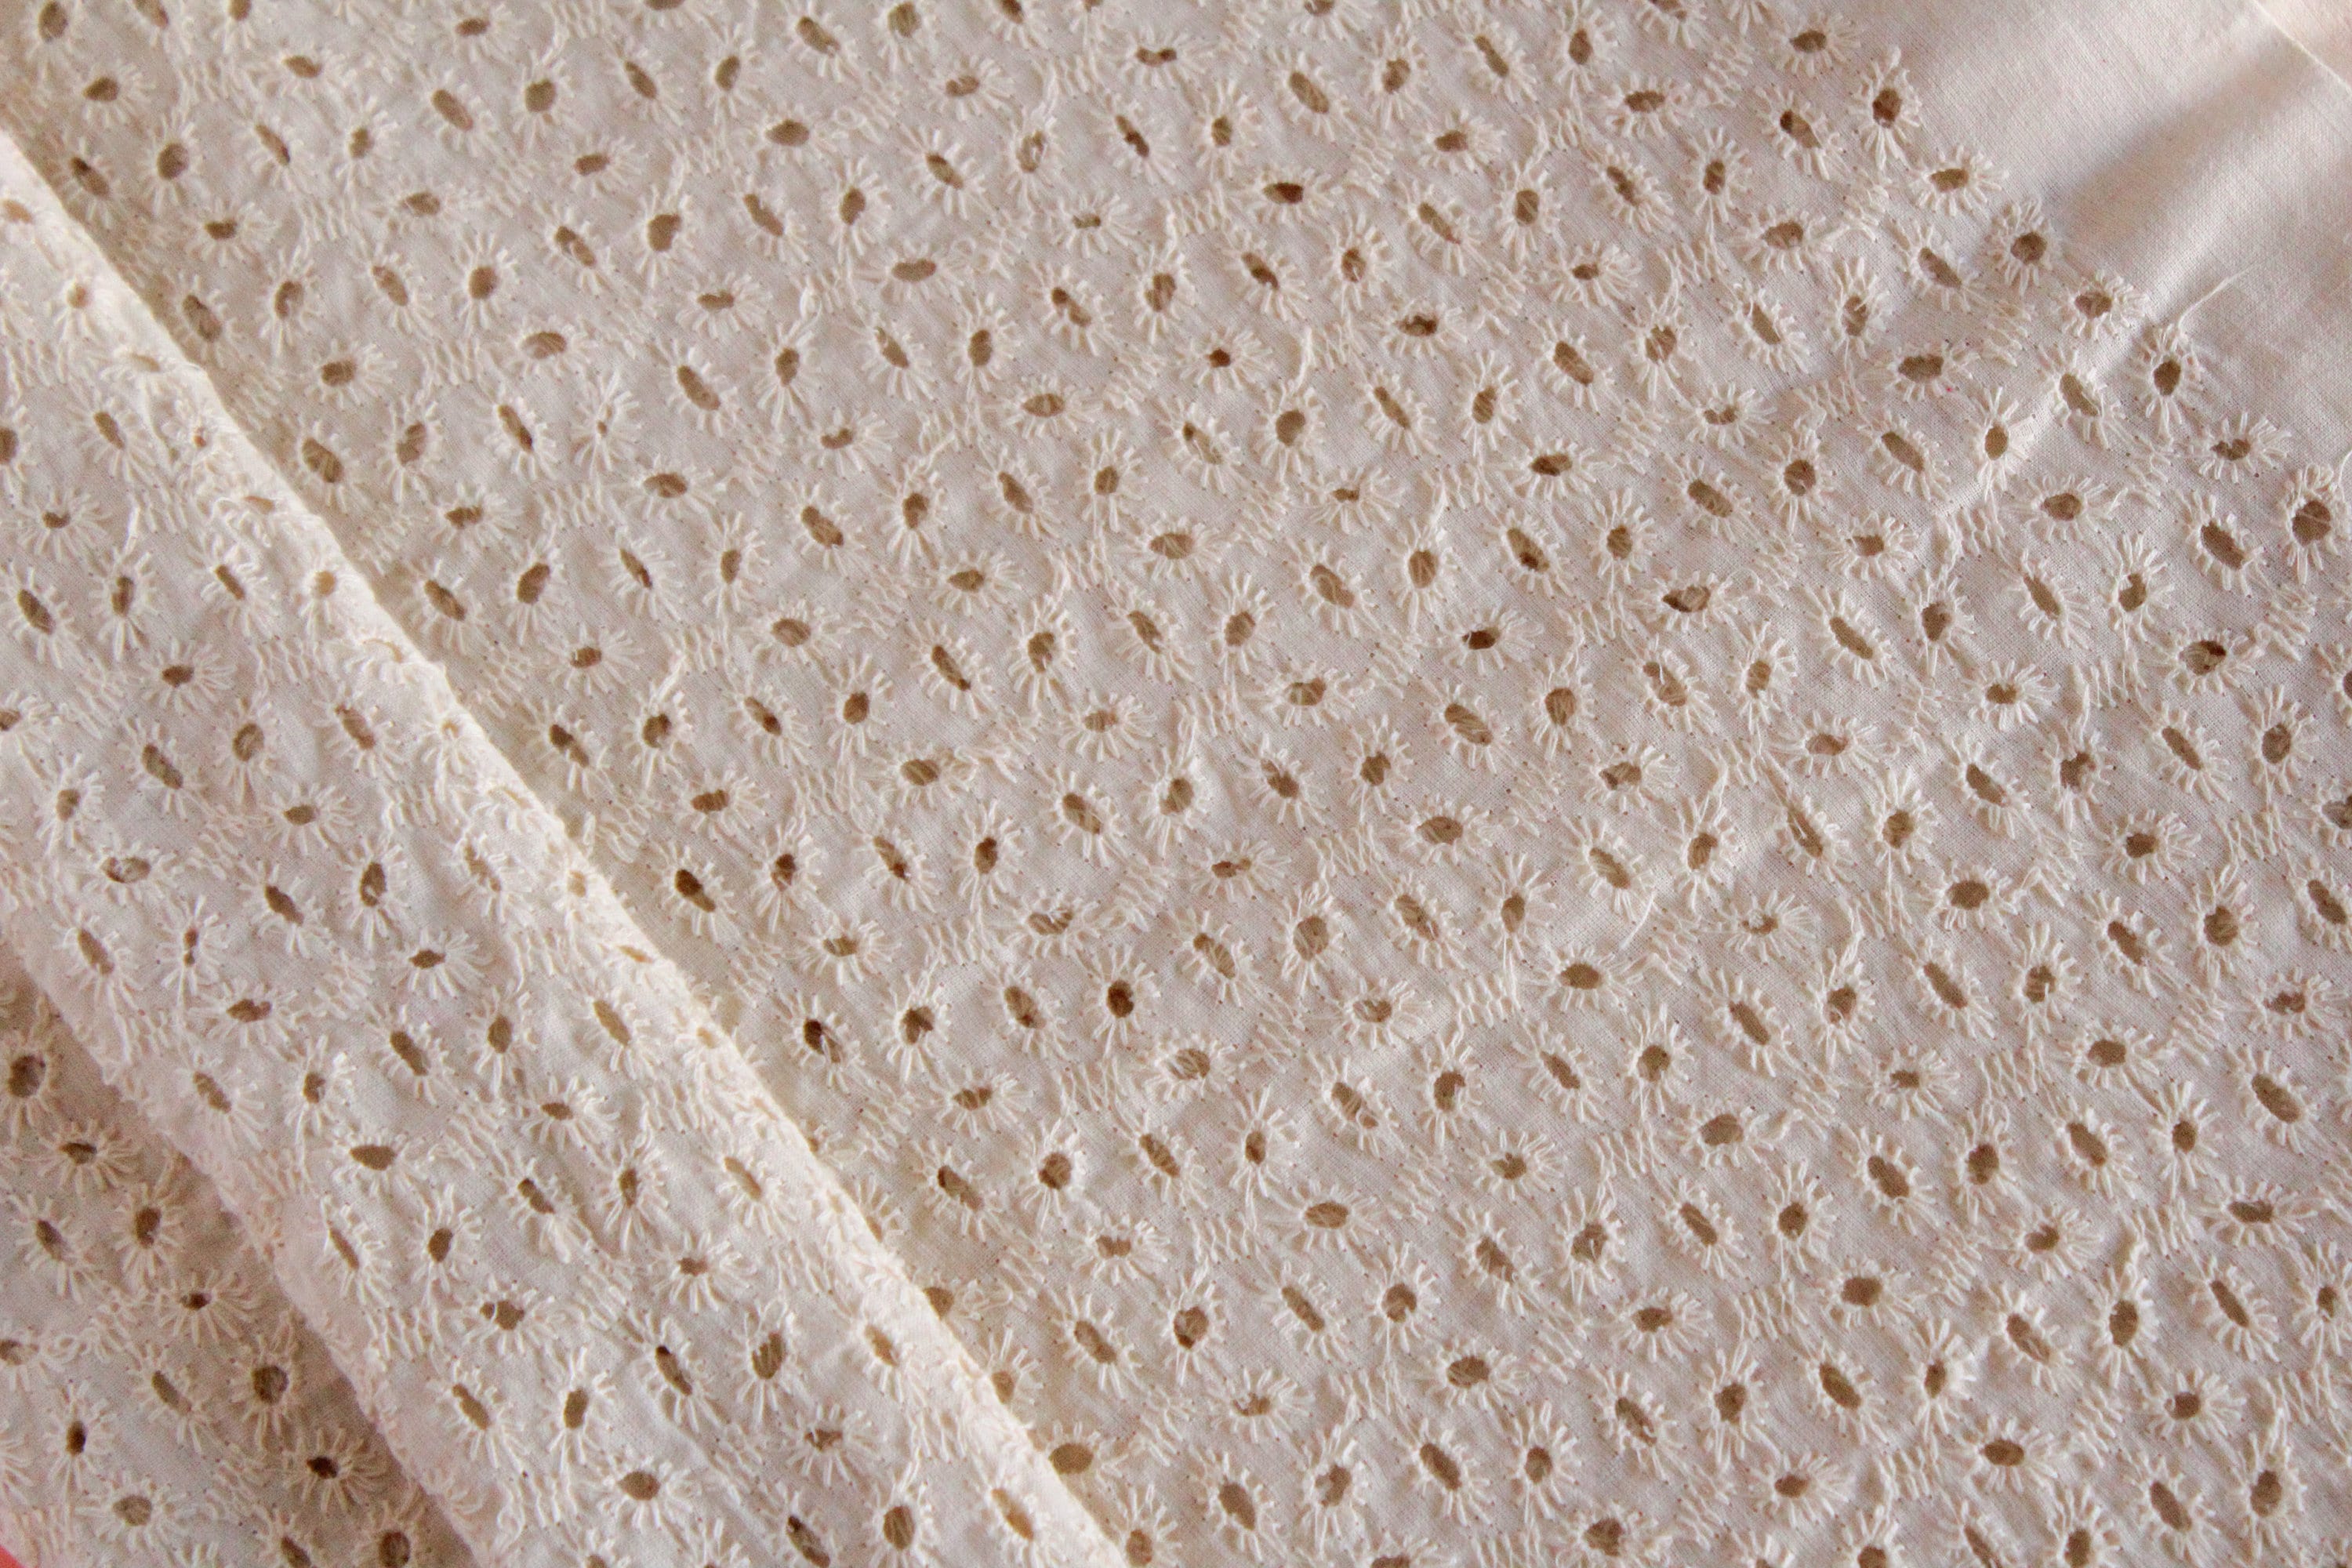  aufodara Tela de algodón para decoración del hogar